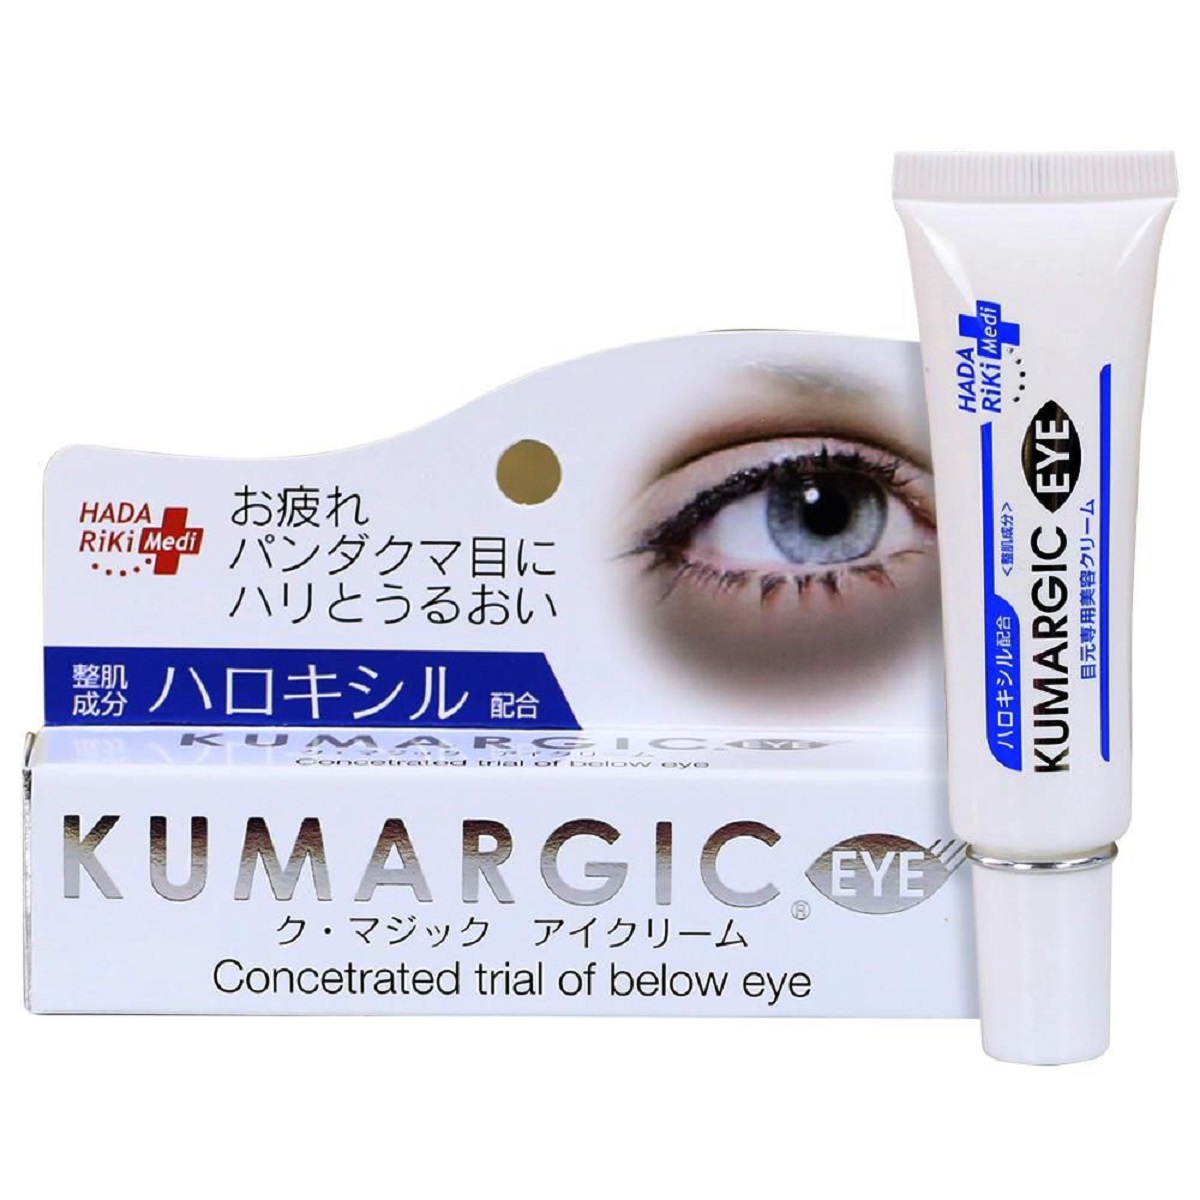 Kem trị thâm mắt Kumargic có hiệu quả tốt không? Mua ở đâu?